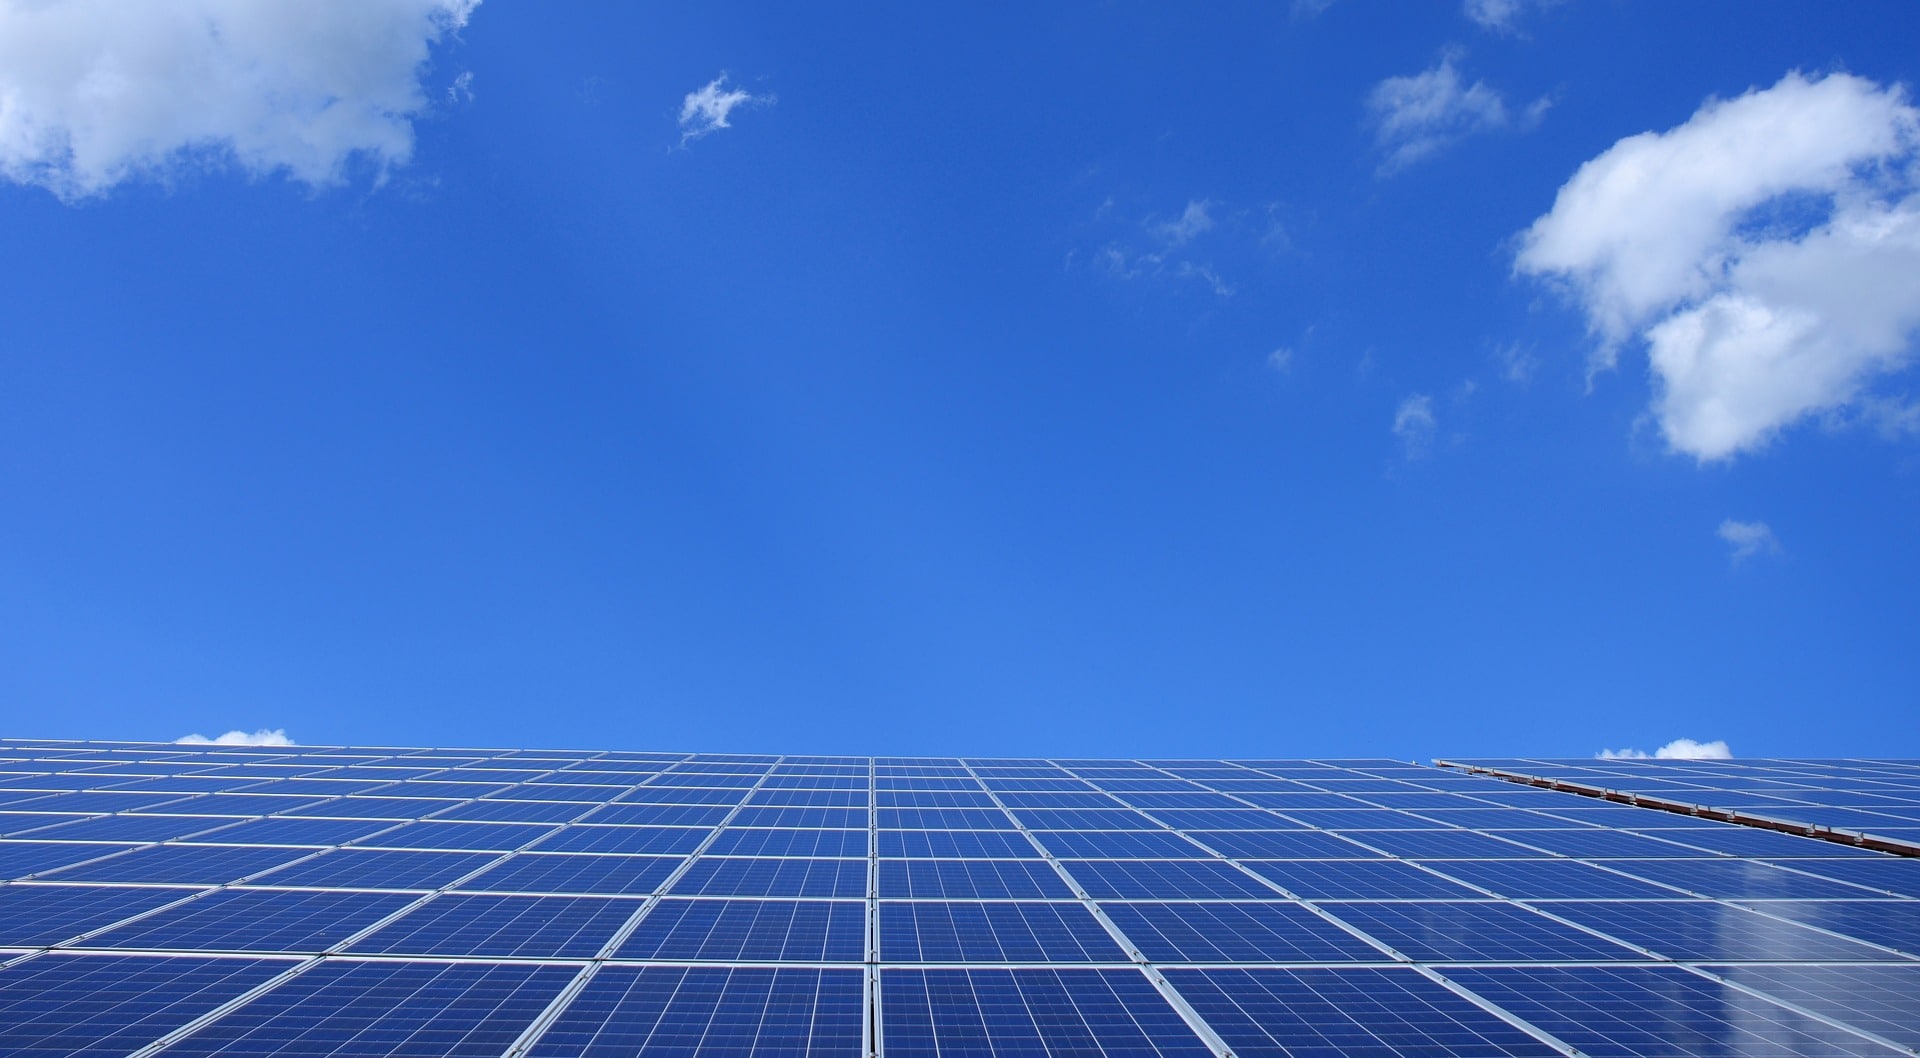 Vue de panneaux photovoltaïques sous un ciel bleu